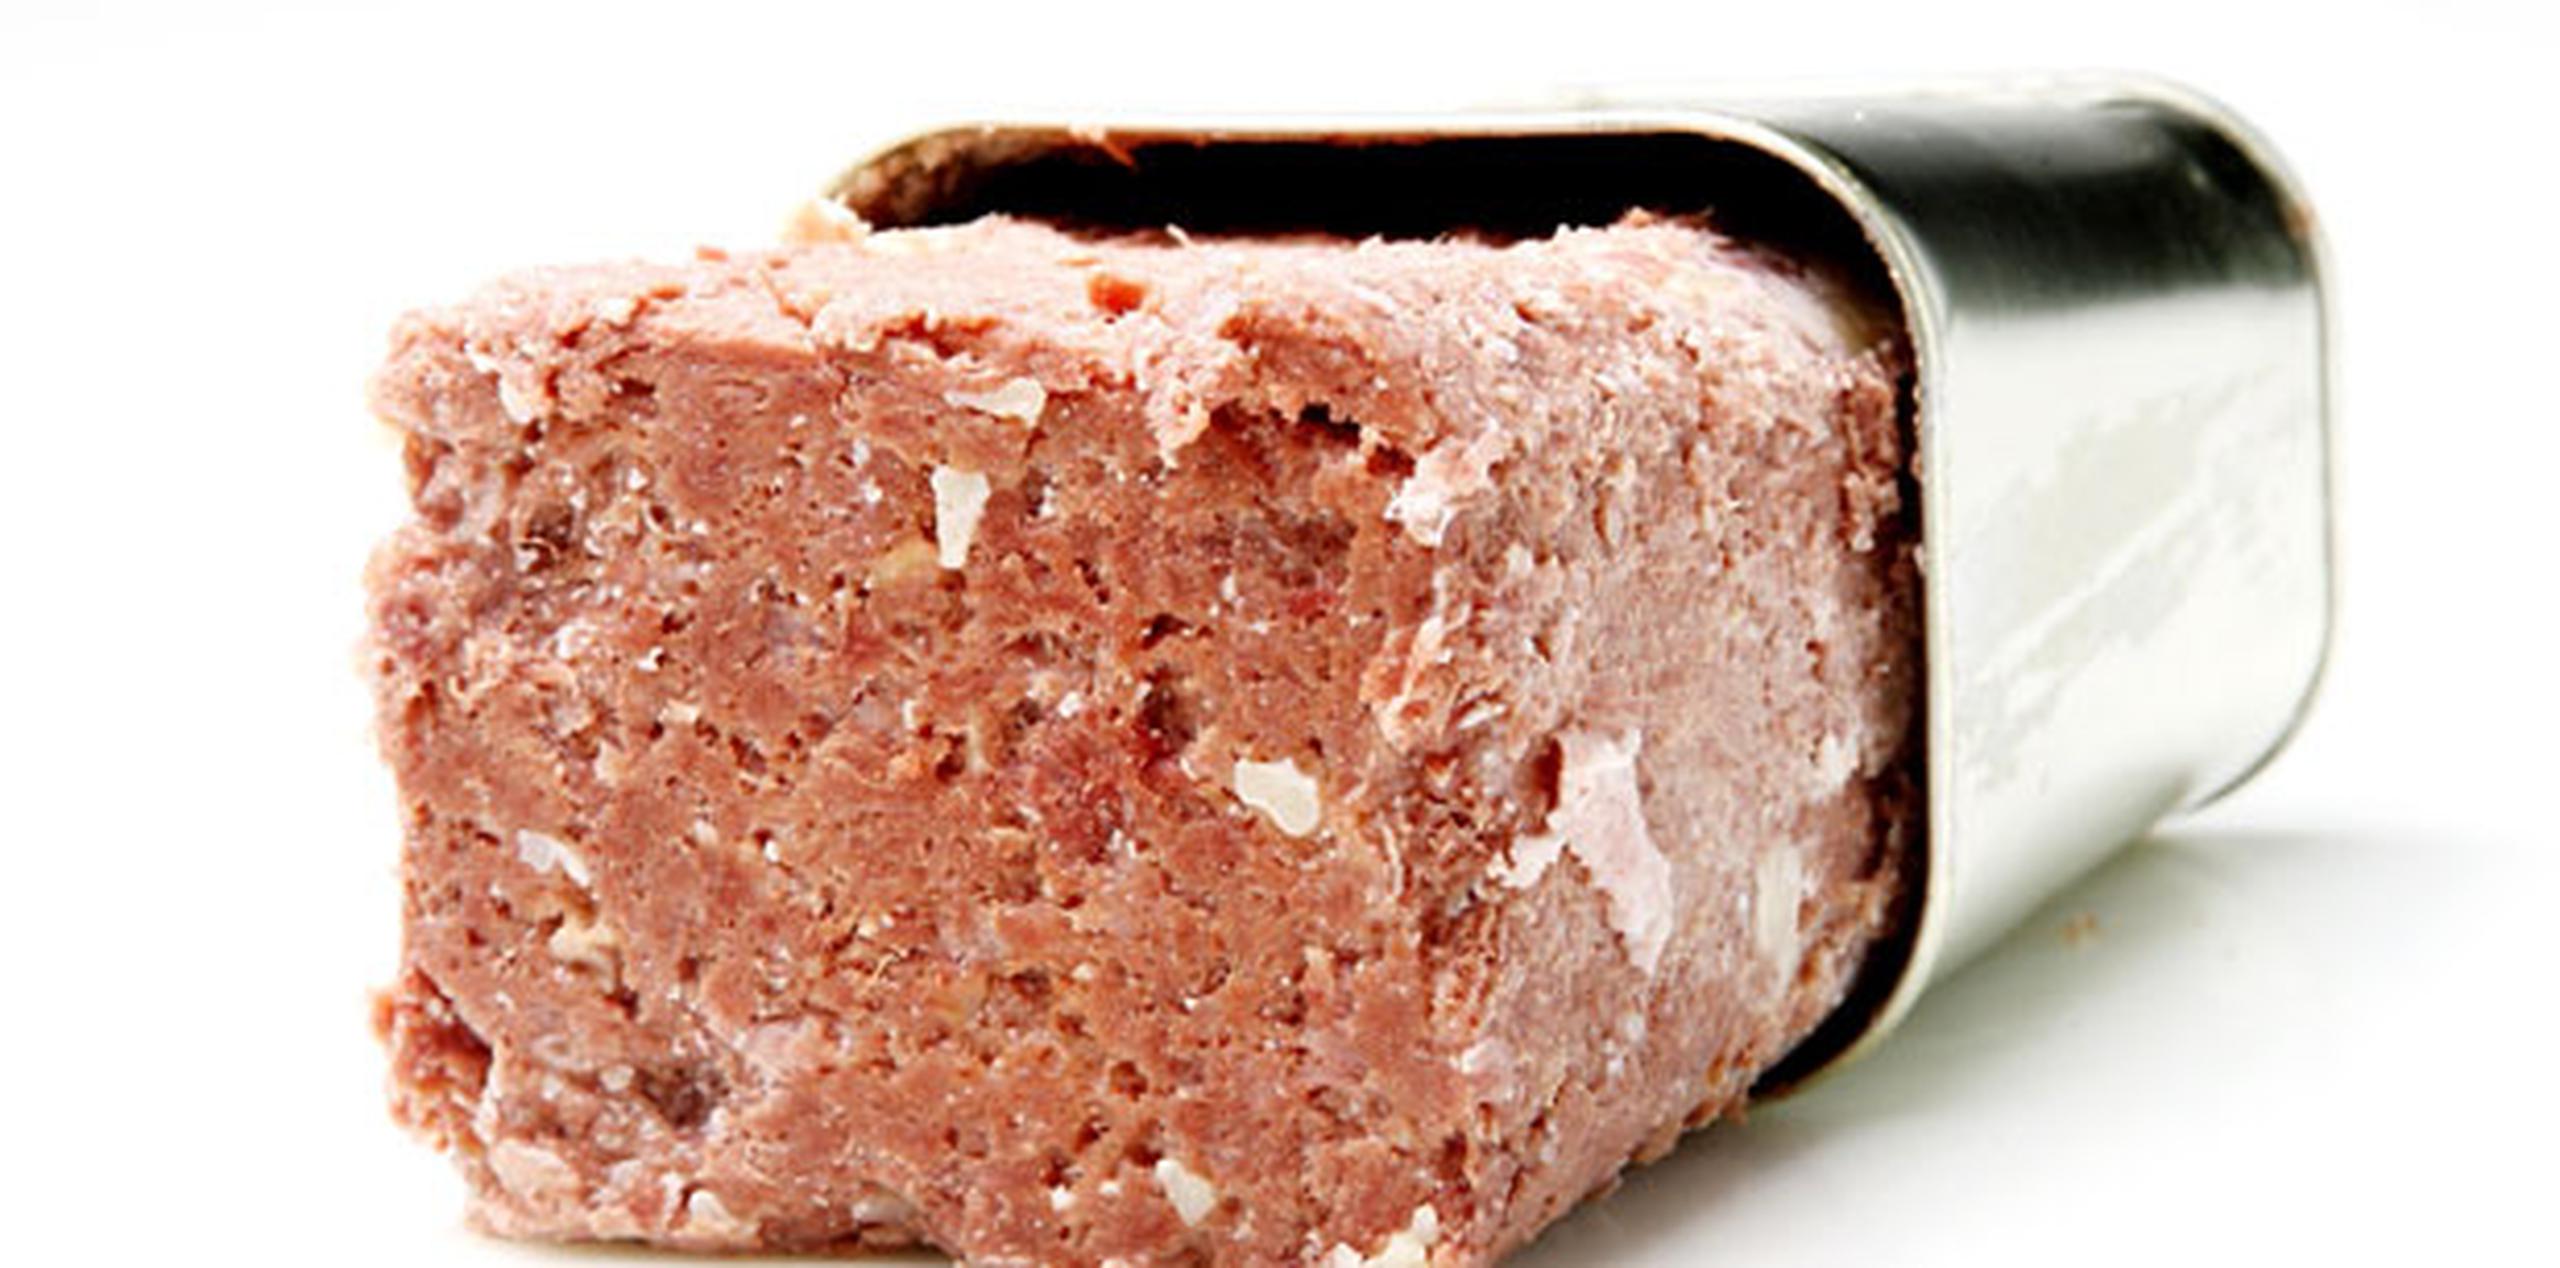 El corned beef, el de la famosa lata cuadrada que todos conocemos,  llegó a Uruguay en 1863  y es desde ese país que se le mercadeará internacionalmente como lo conocemos hoy. (Archivo)